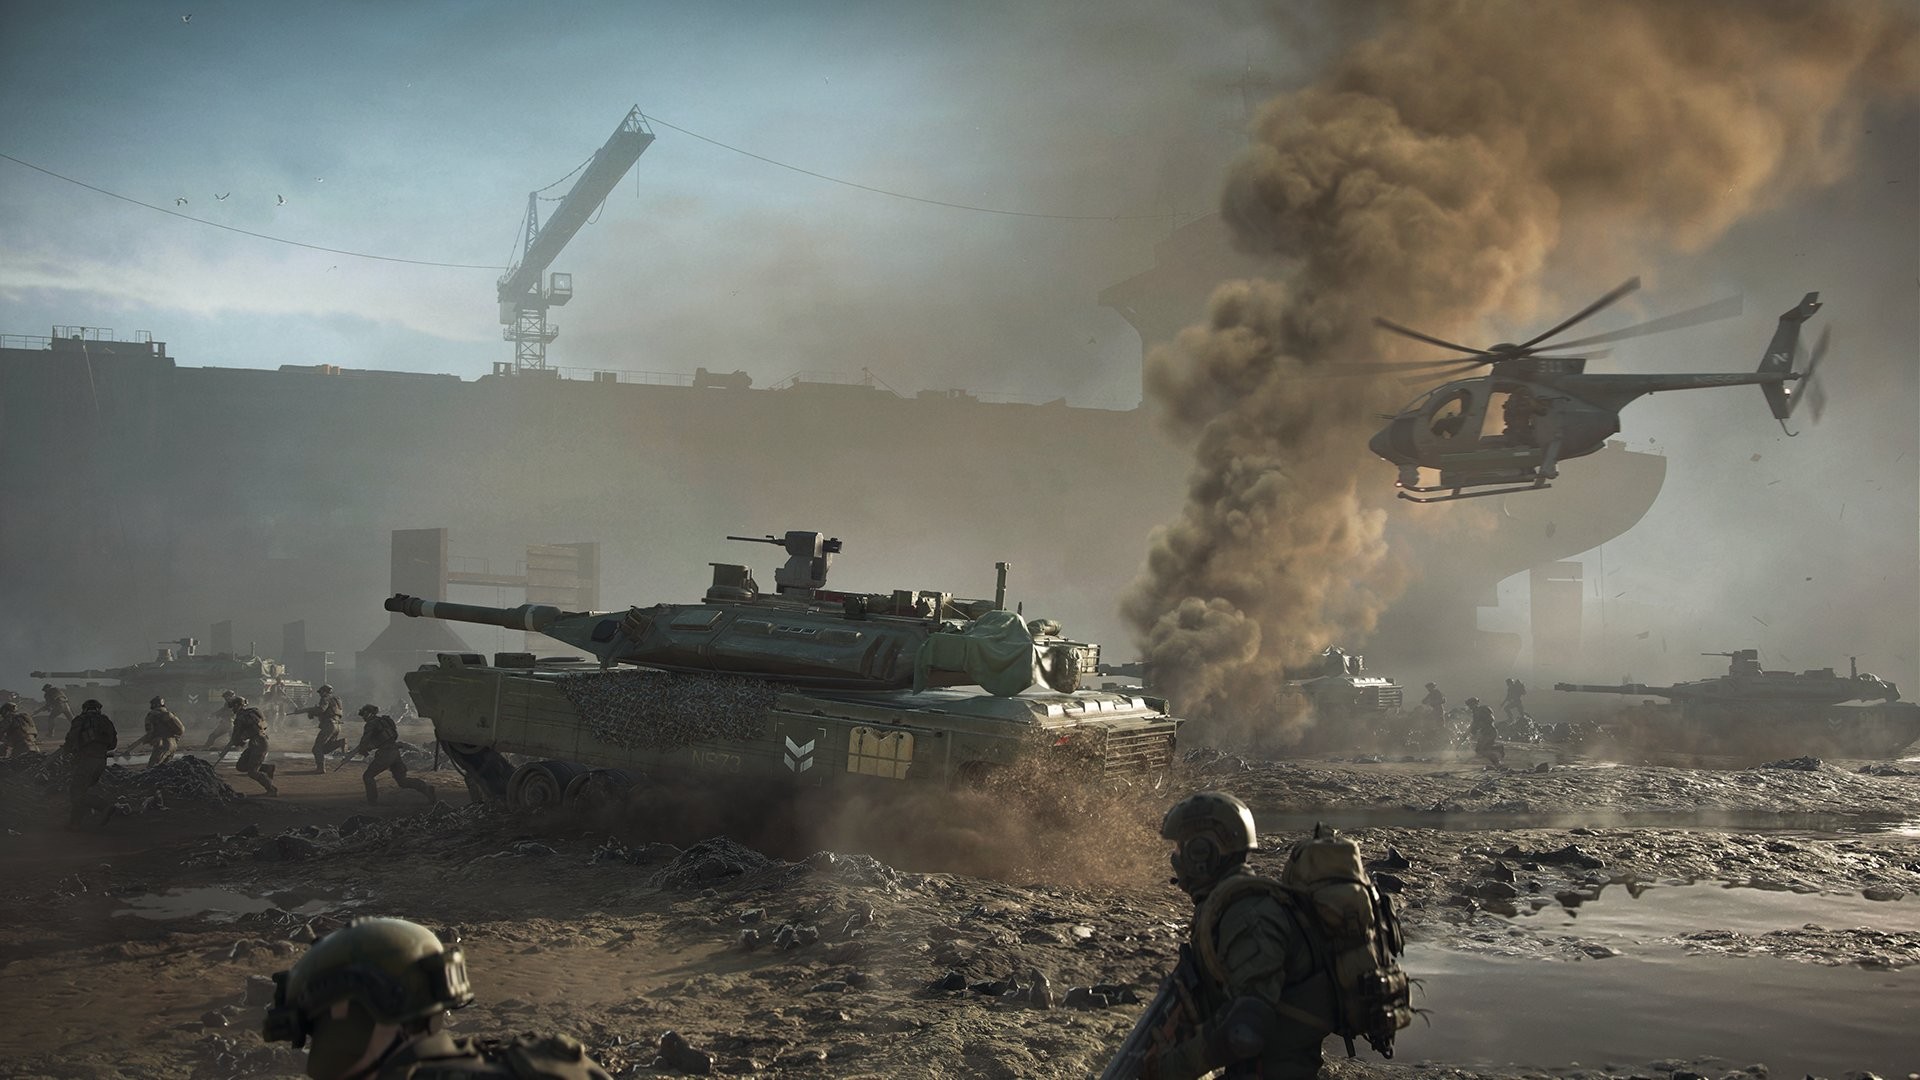 Battlefield 2042 - PC EA app